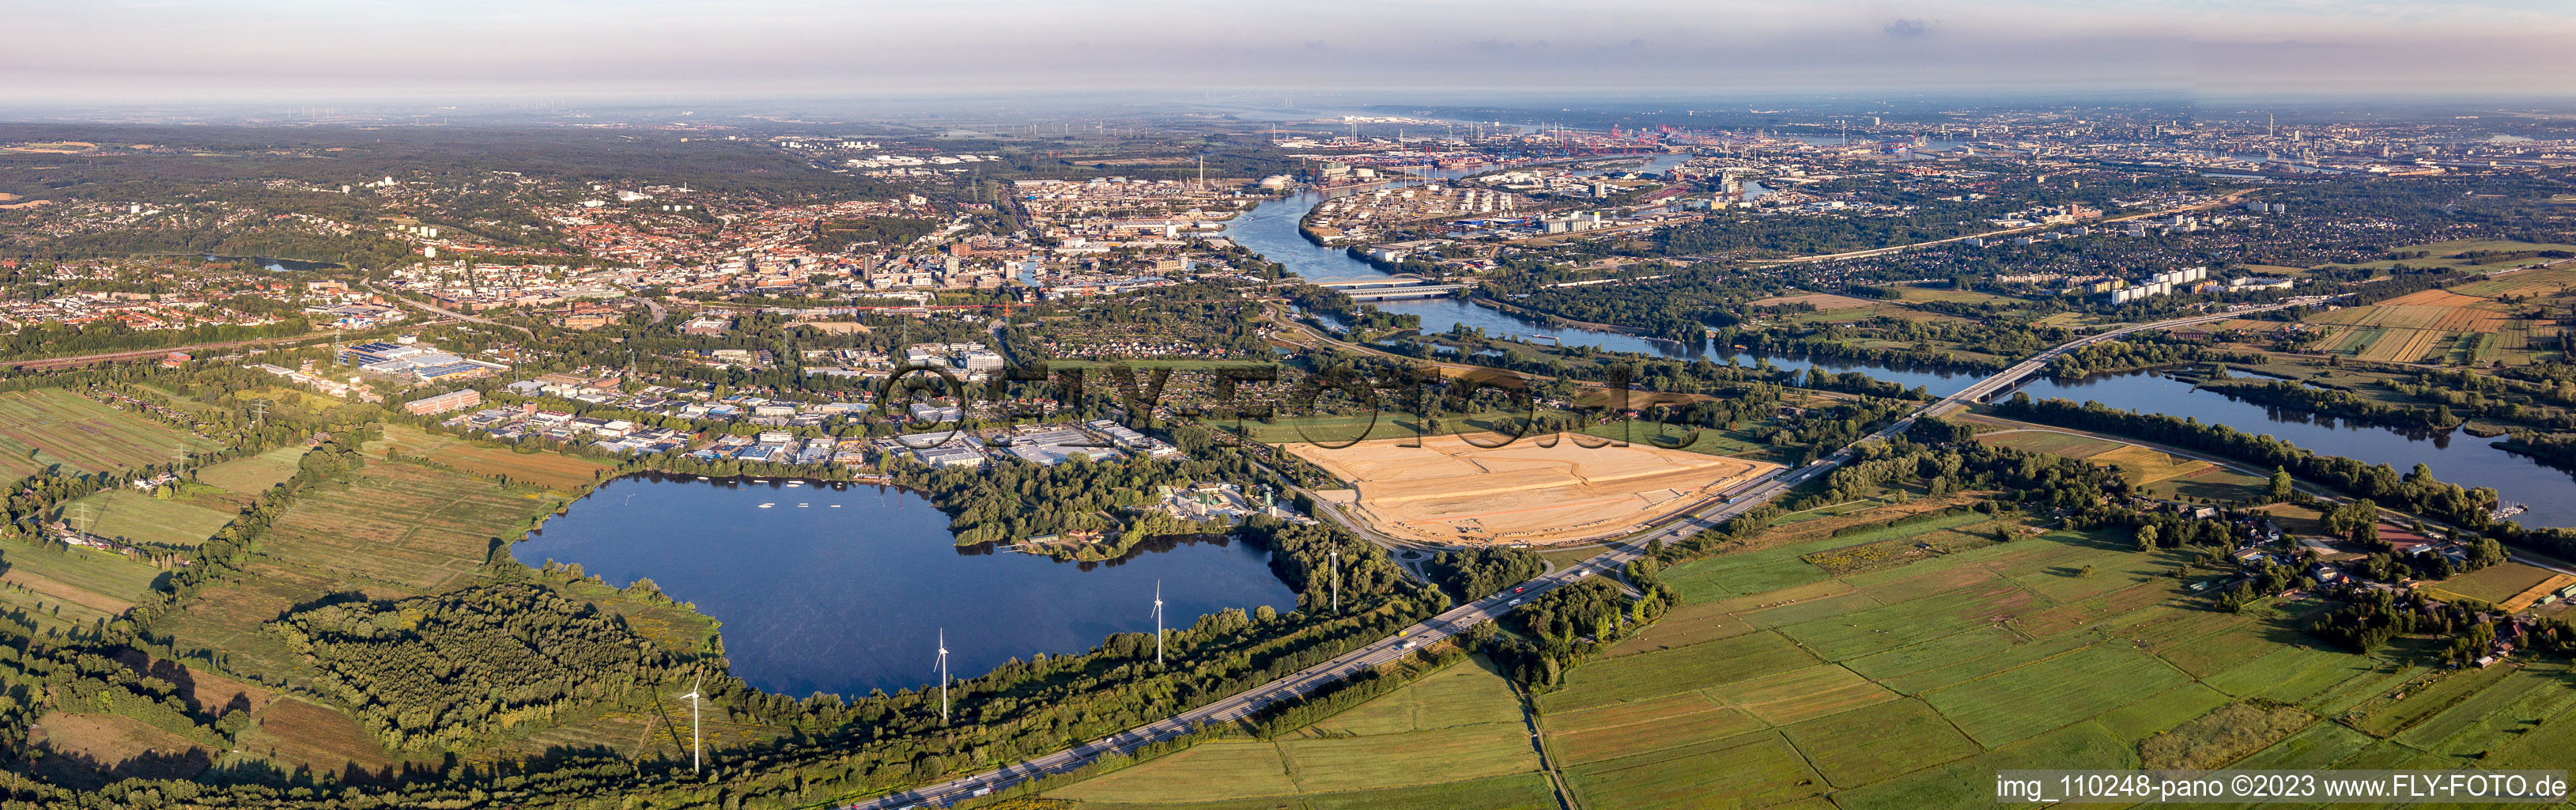 Panorama an den Fluss- Uferbereichen der Süderelbe im Ortsteil Harburg in Hamburg, Deutschland